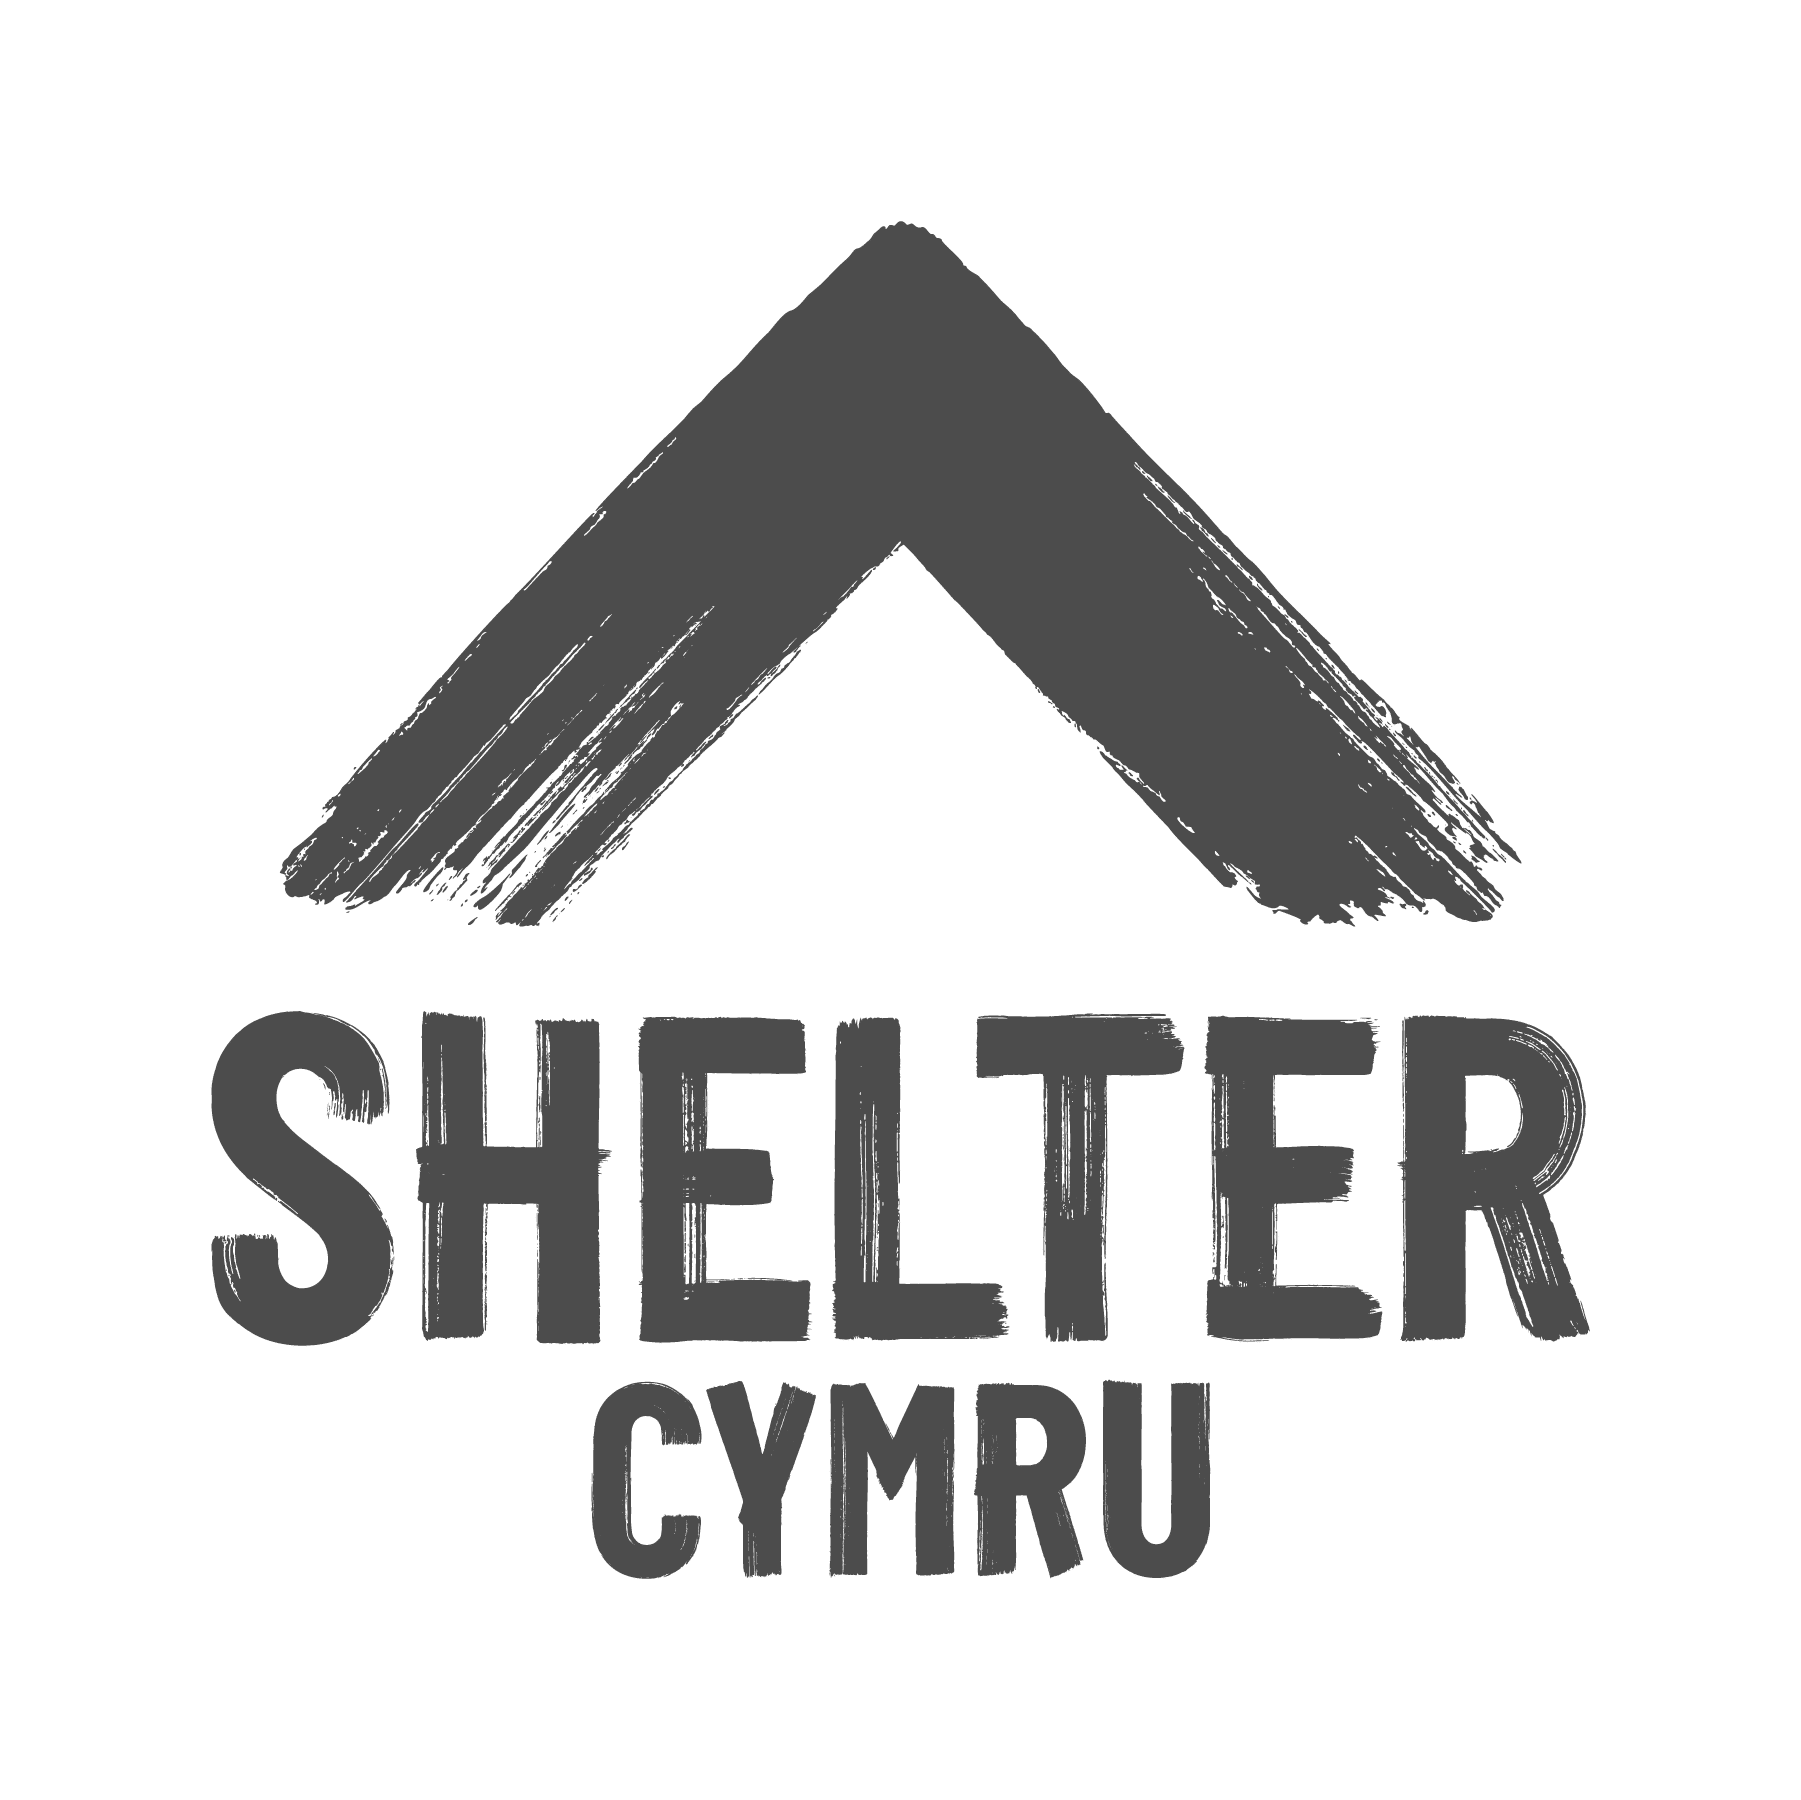 Shelter cymru